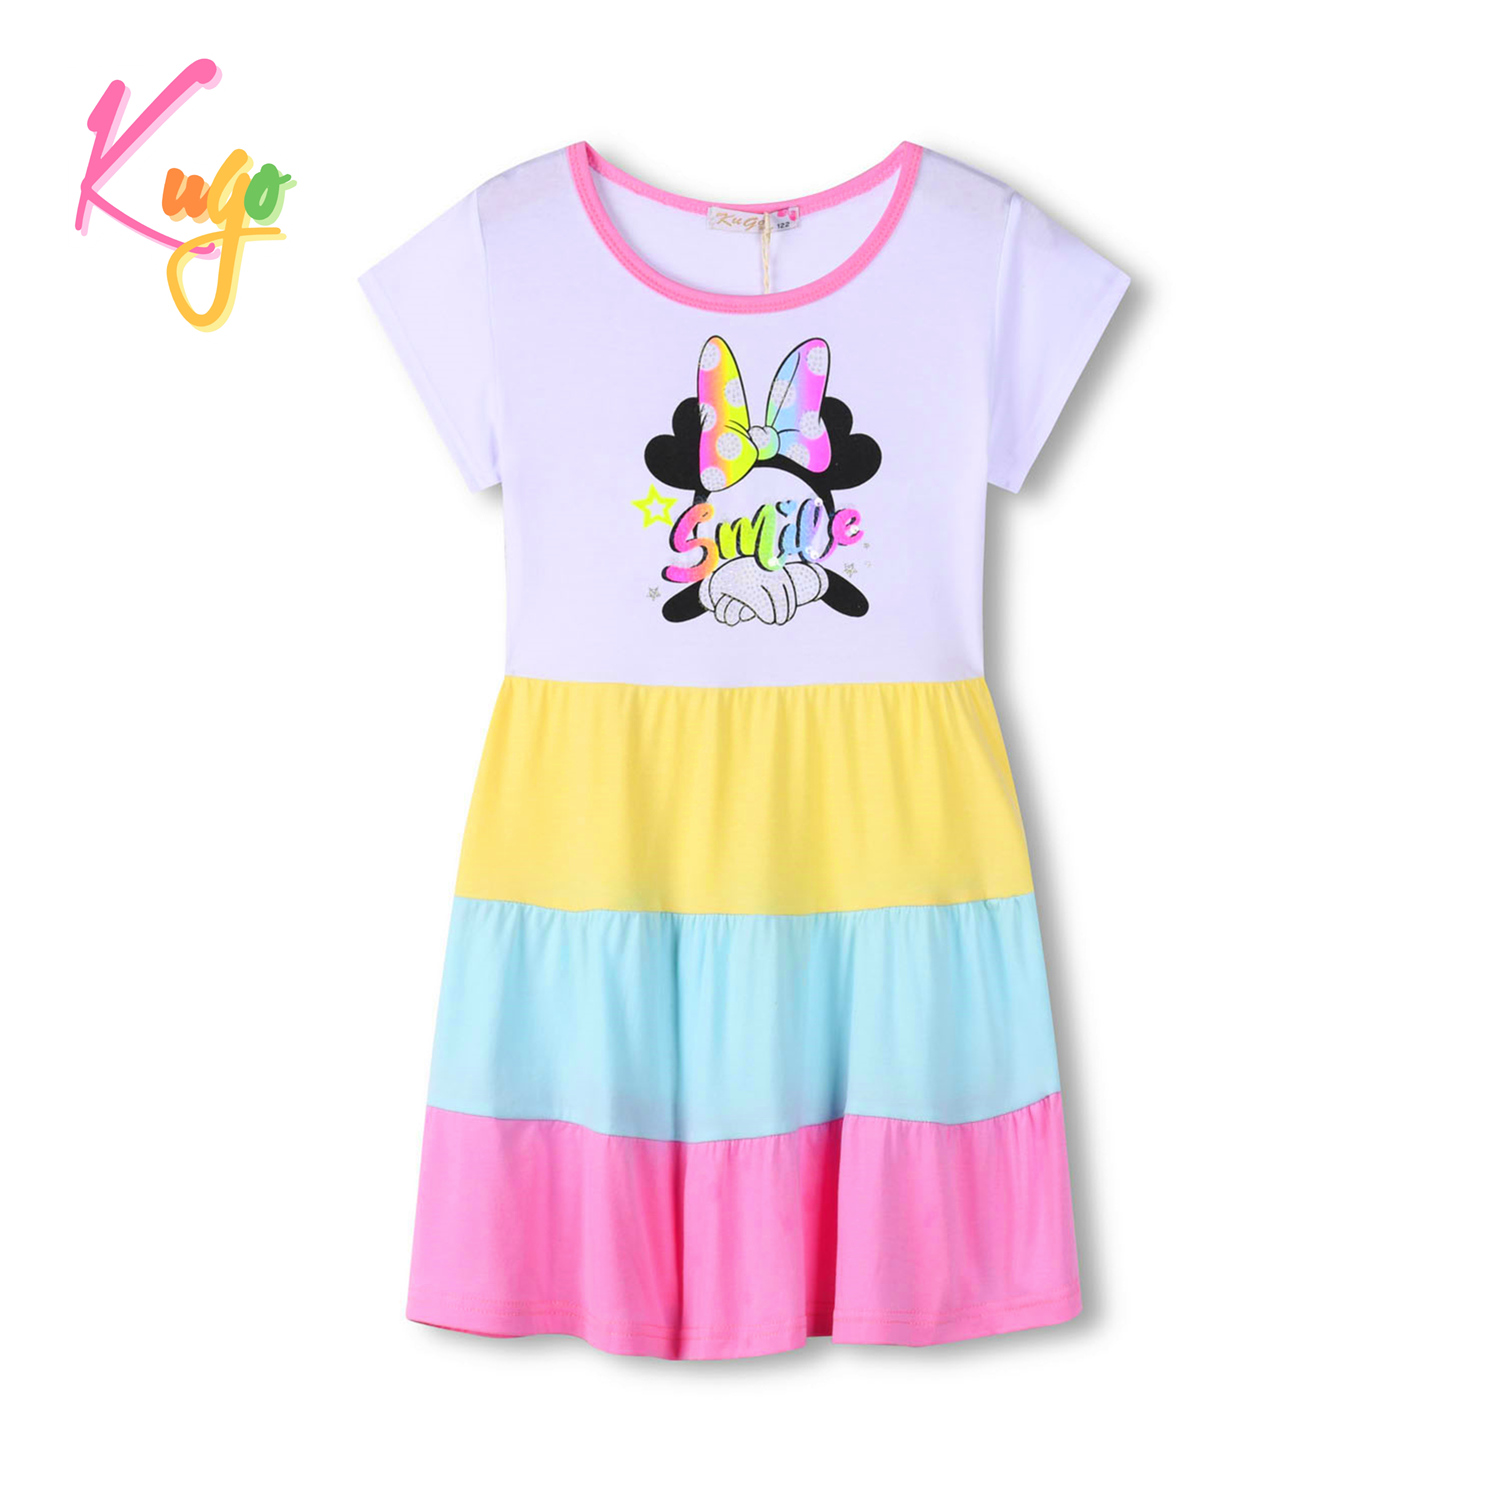 Dívčí šaty - KUGO MS1721, růžová Barva: Růžová, Velikost: 98